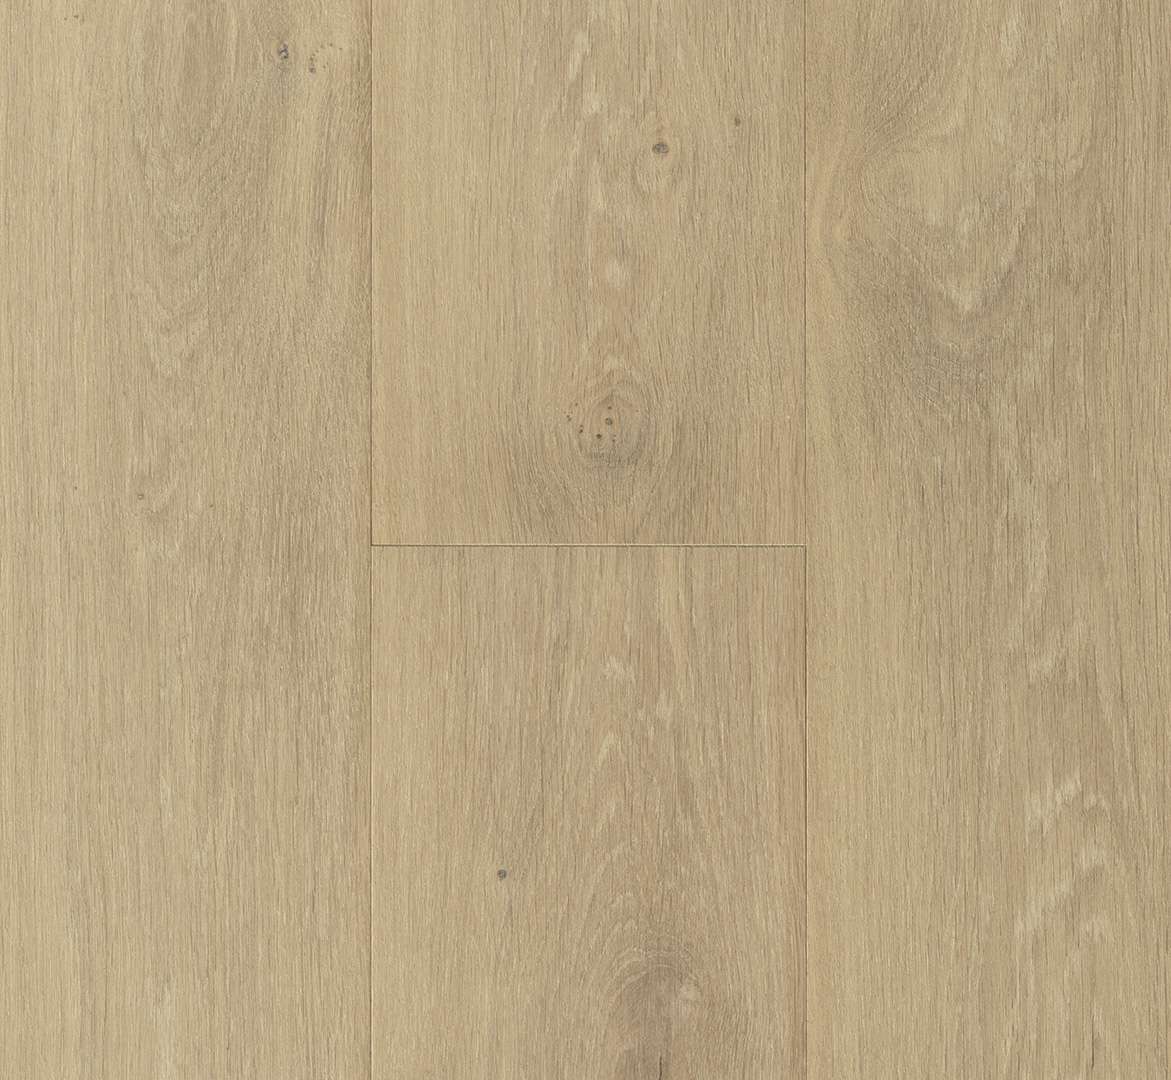 PARADOR Classic 3060 (Dub Muscat - Rustikal - olej) 1739911 - dřevěná třívrstvá podlaha